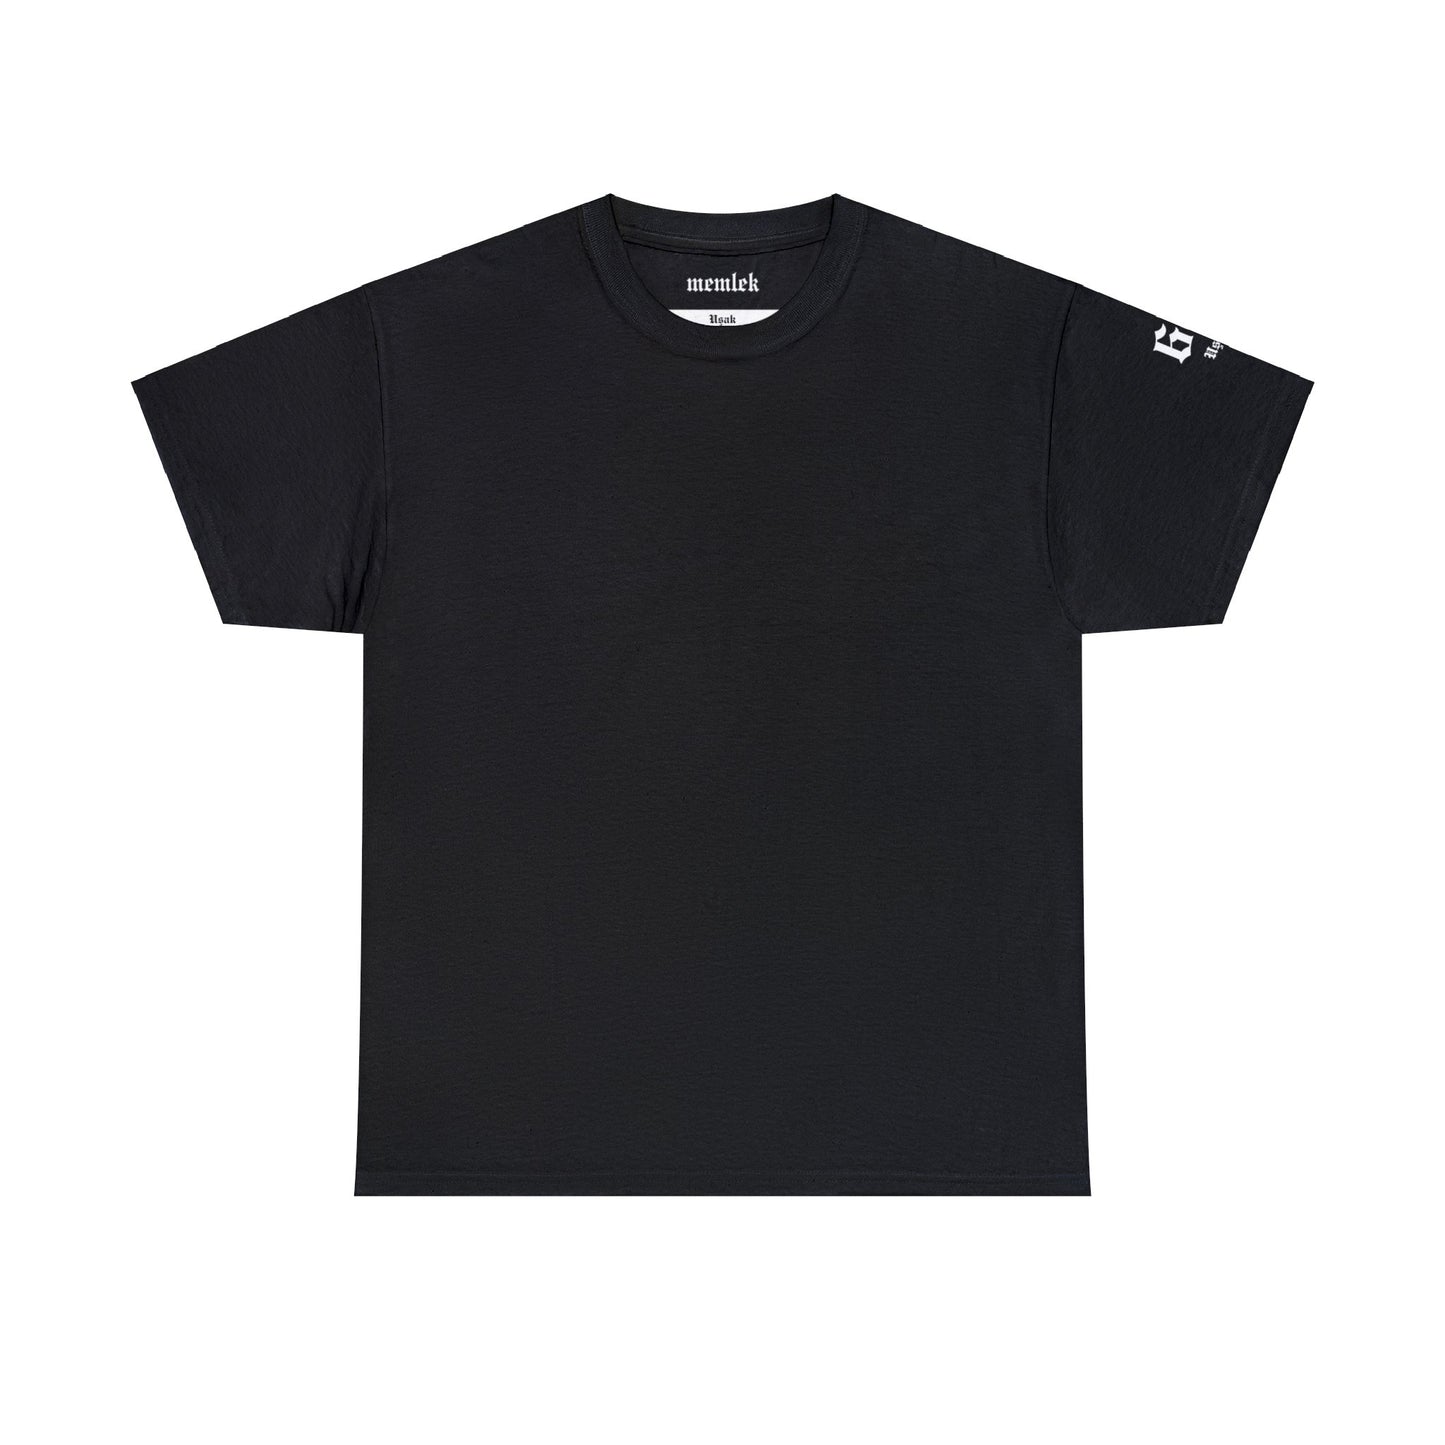 Şehirim - 64 Uşak - T-Shirt - Back Print - Black